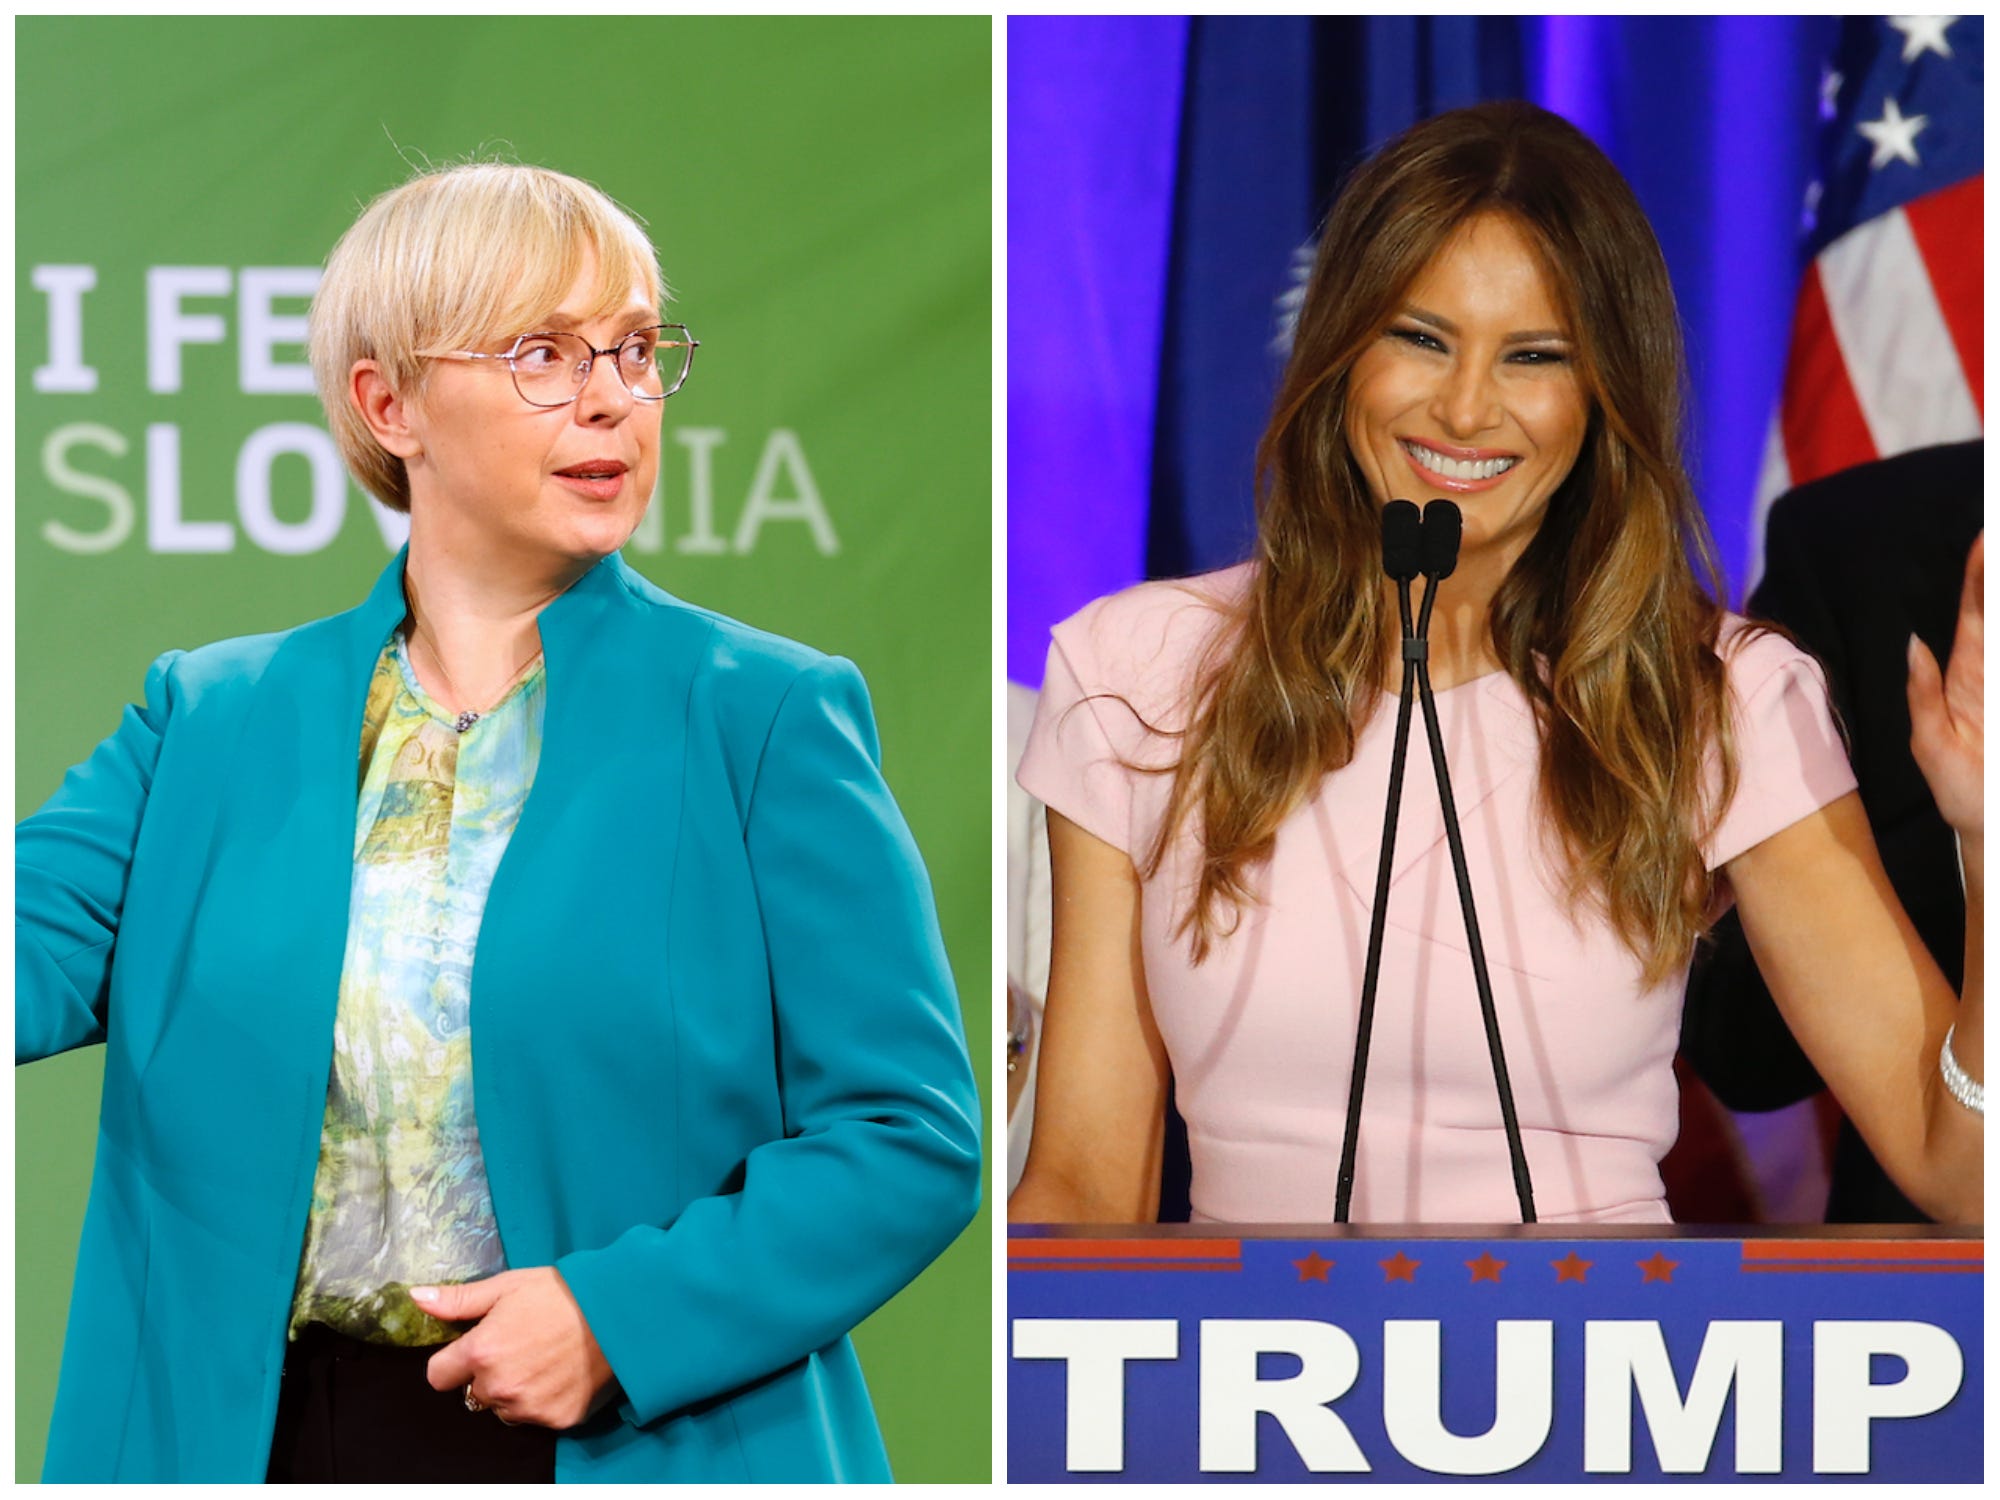 Links: Nataša Pirc Musar kijkt opzij tijdens de Sloveense presidentscampagne in 2022. Rechts: Melania Trump glimlachend op een podium tijdens de Amerikaanse presidentscampagne van Donald Trump in 2016.